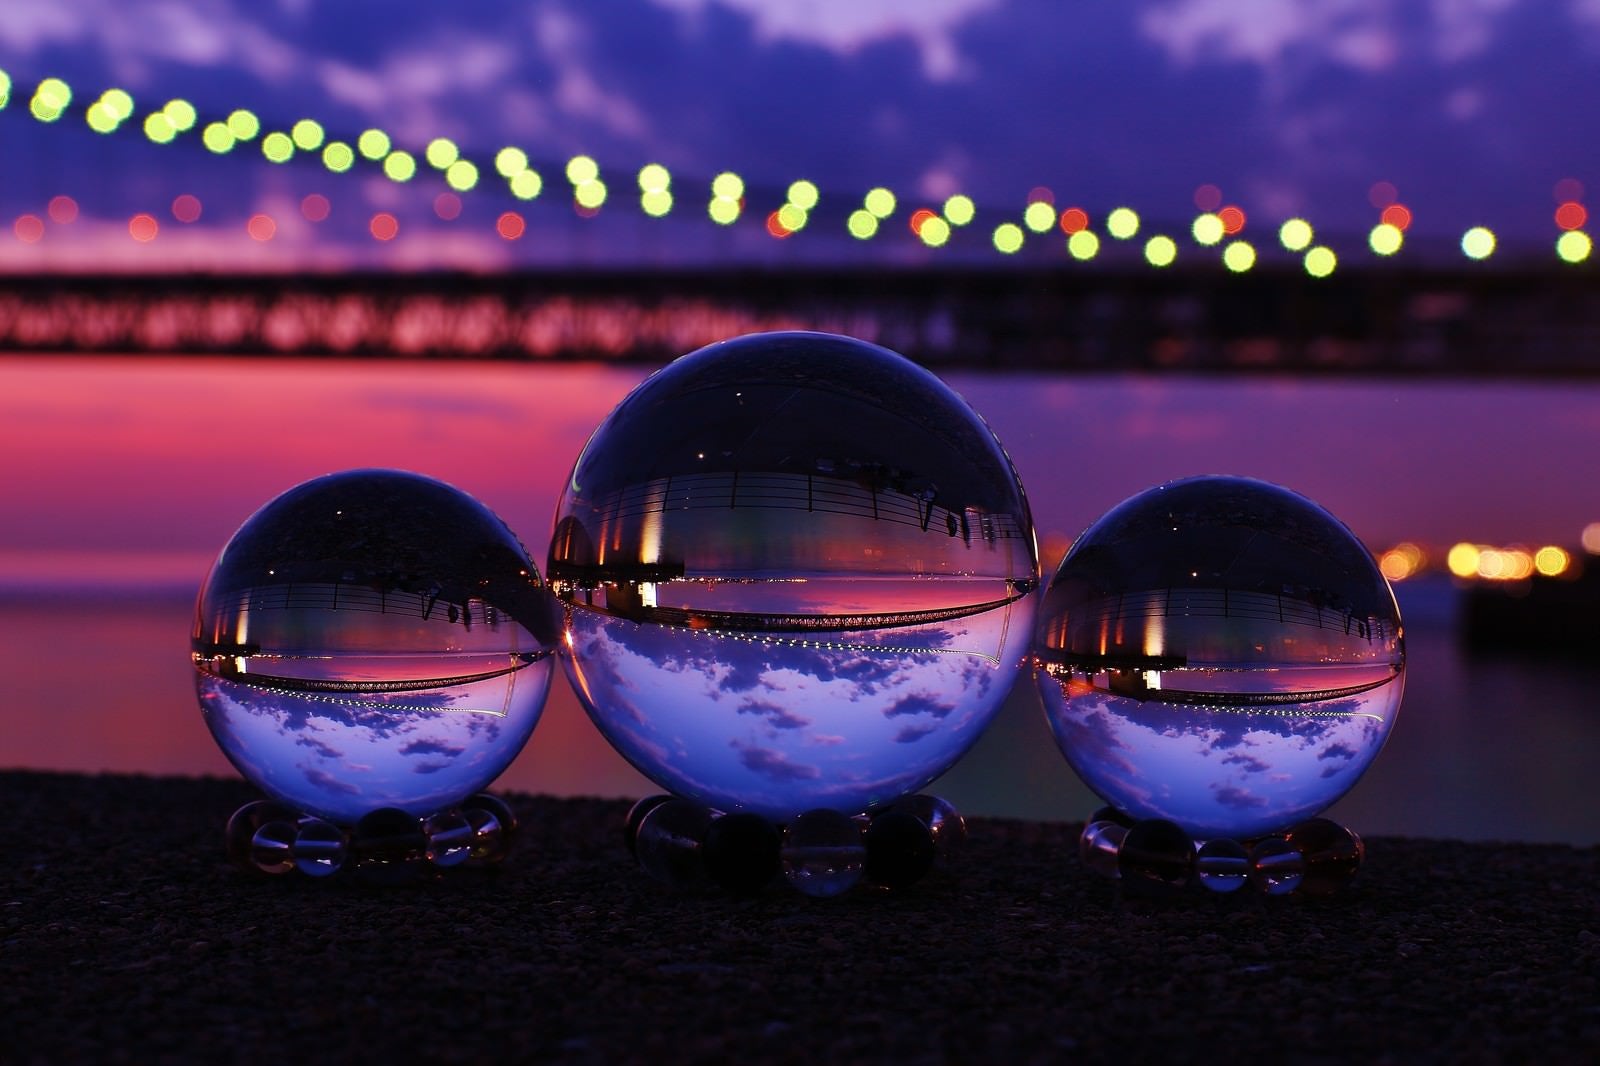 「ライトアップした大橋と映り込む水晶球」の写真